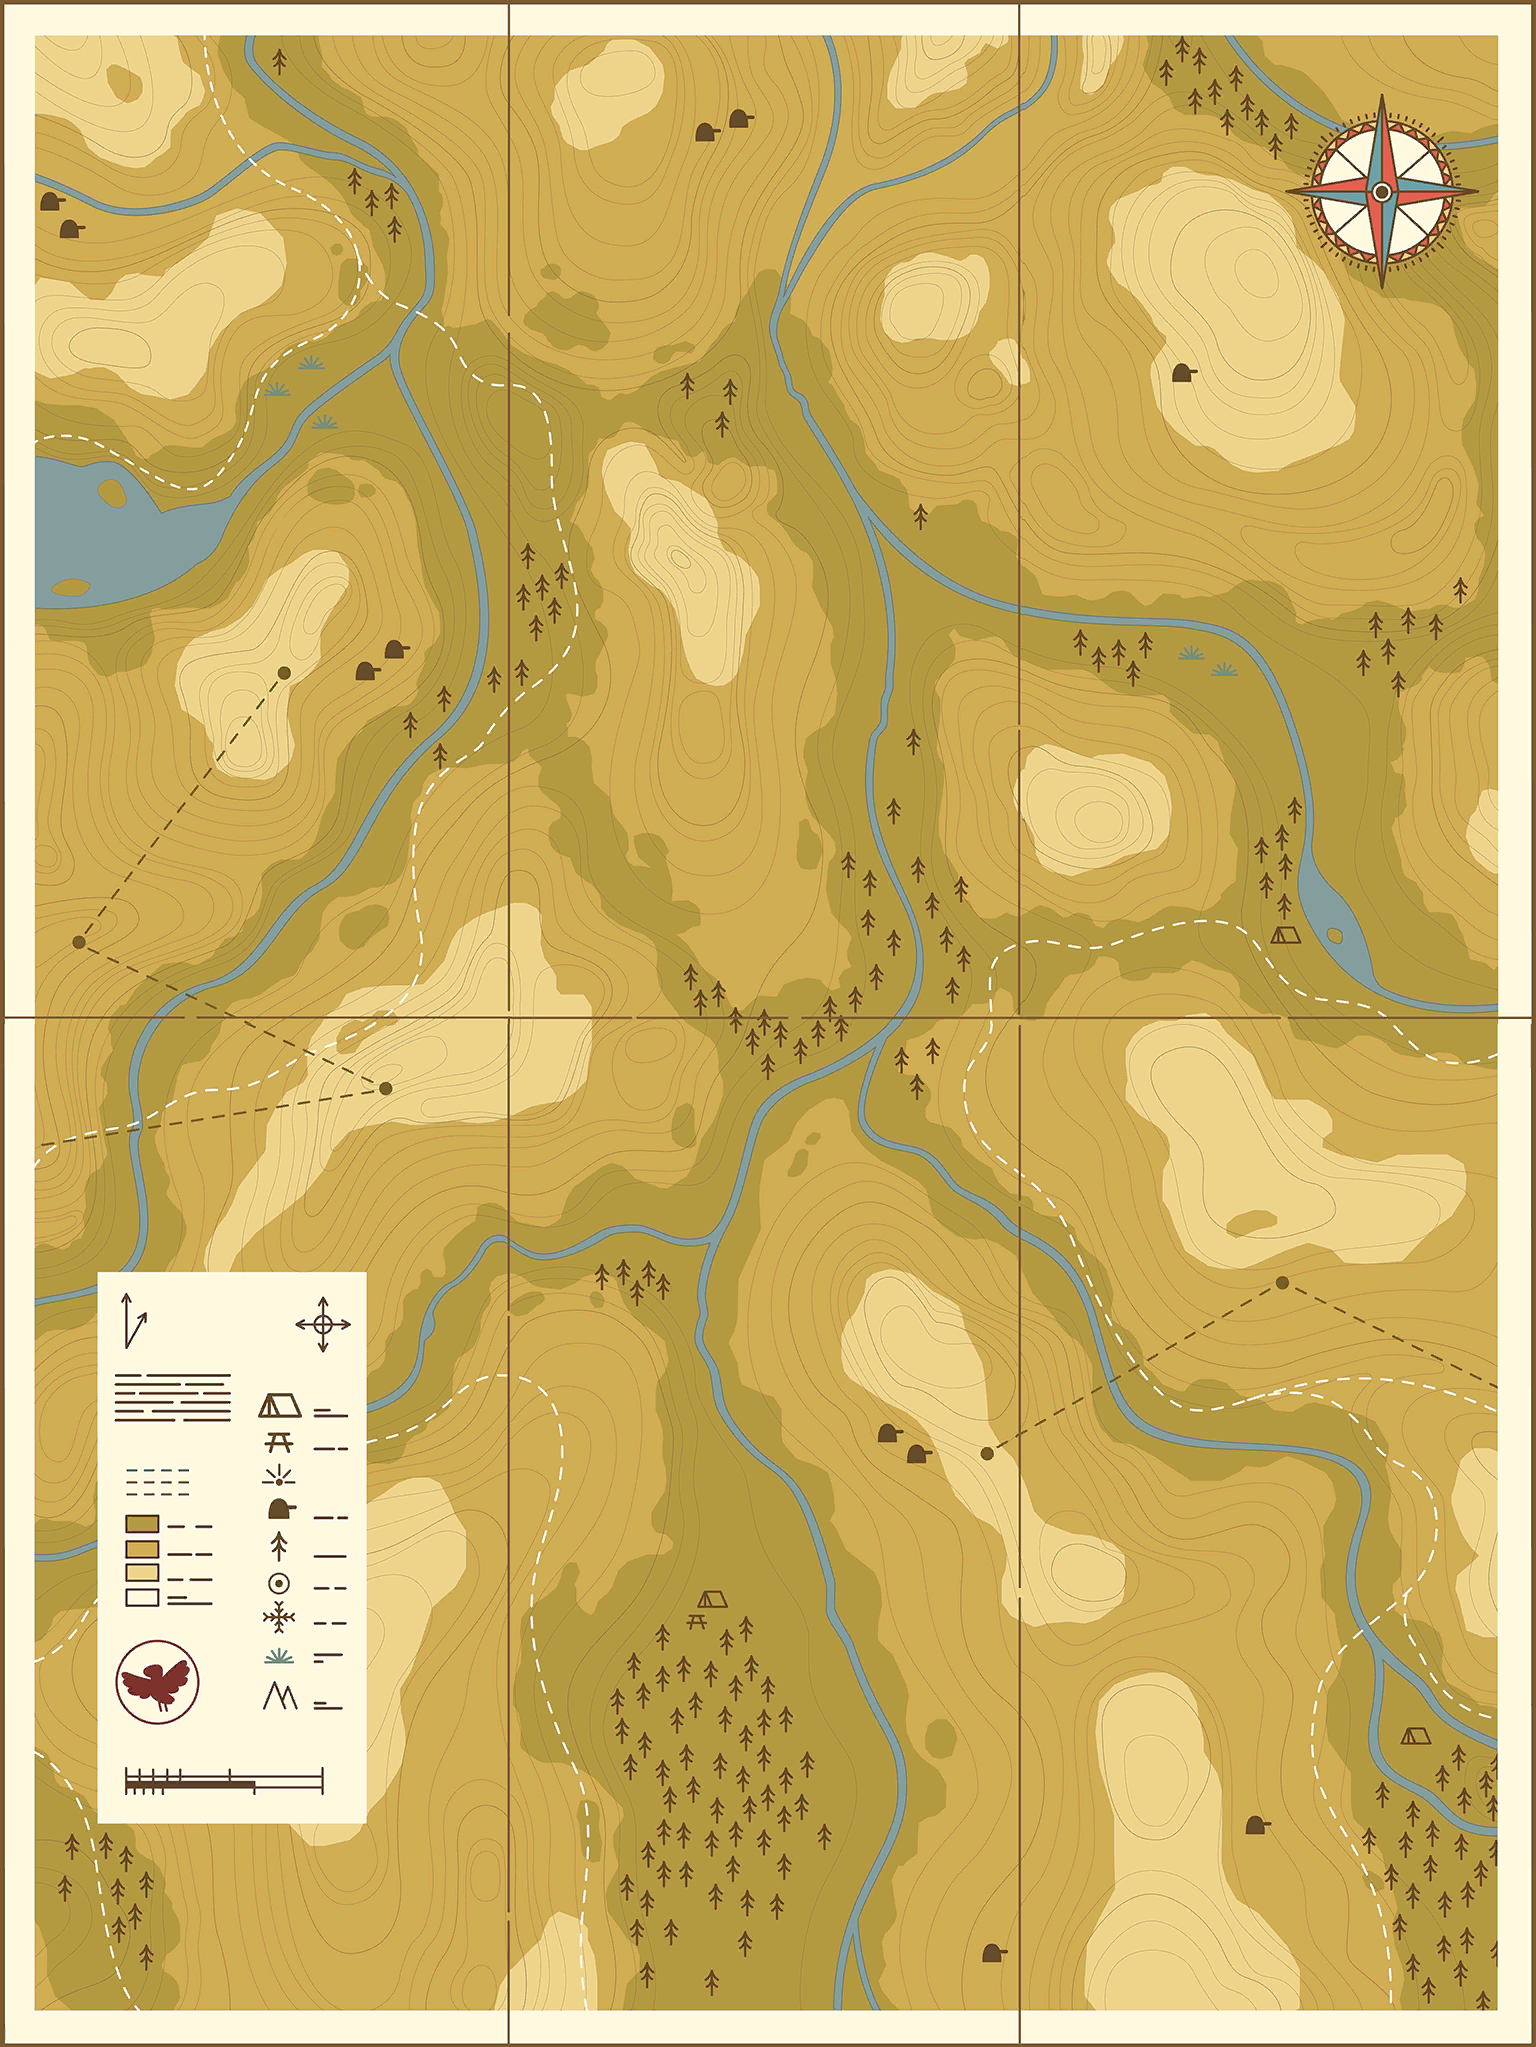 Hilda Creatures - Wilderness Map